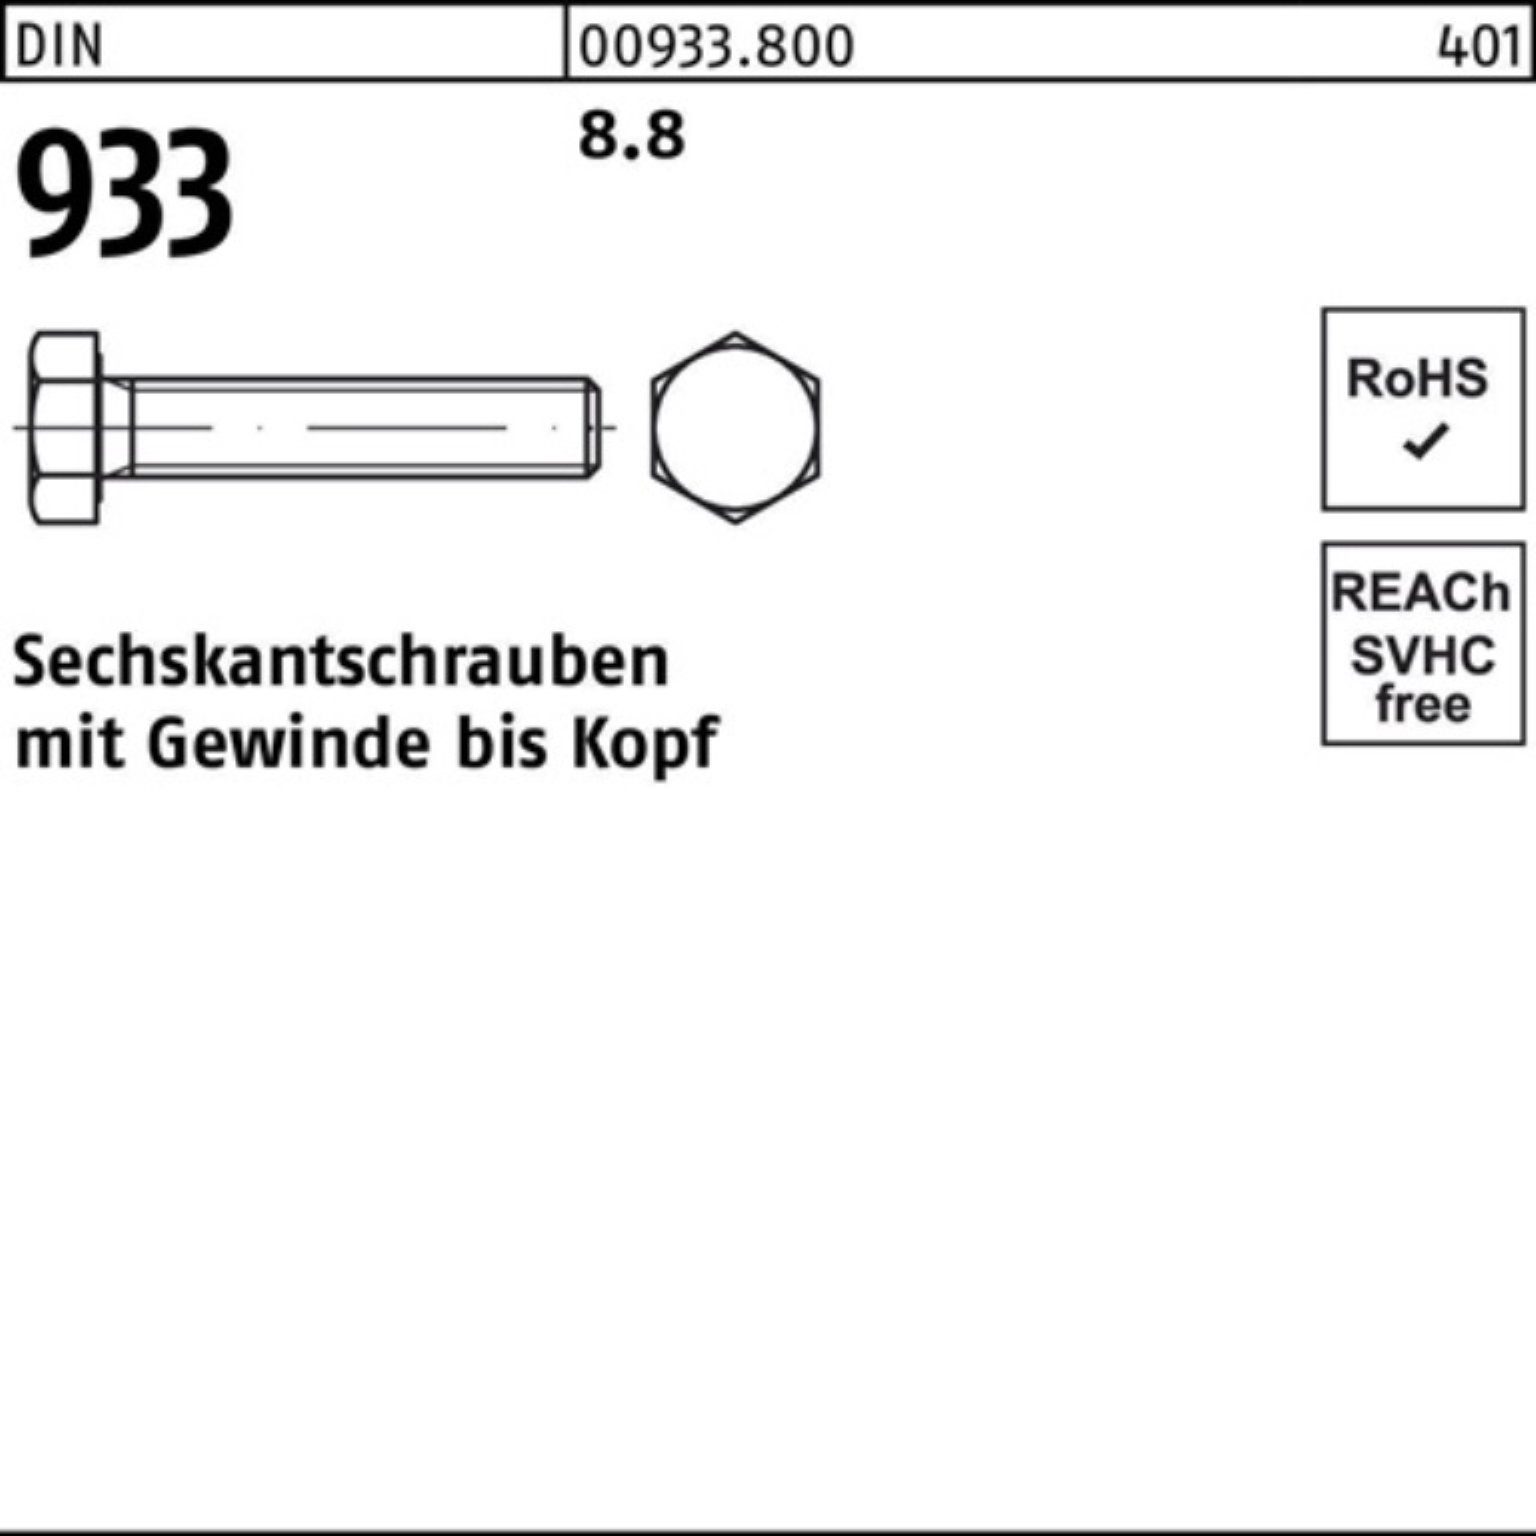 Pack Sechskantschraube 933 DIN VG Sechskantschraube 1 M27x 8.8 933 140 100er Stück Reyher DIN